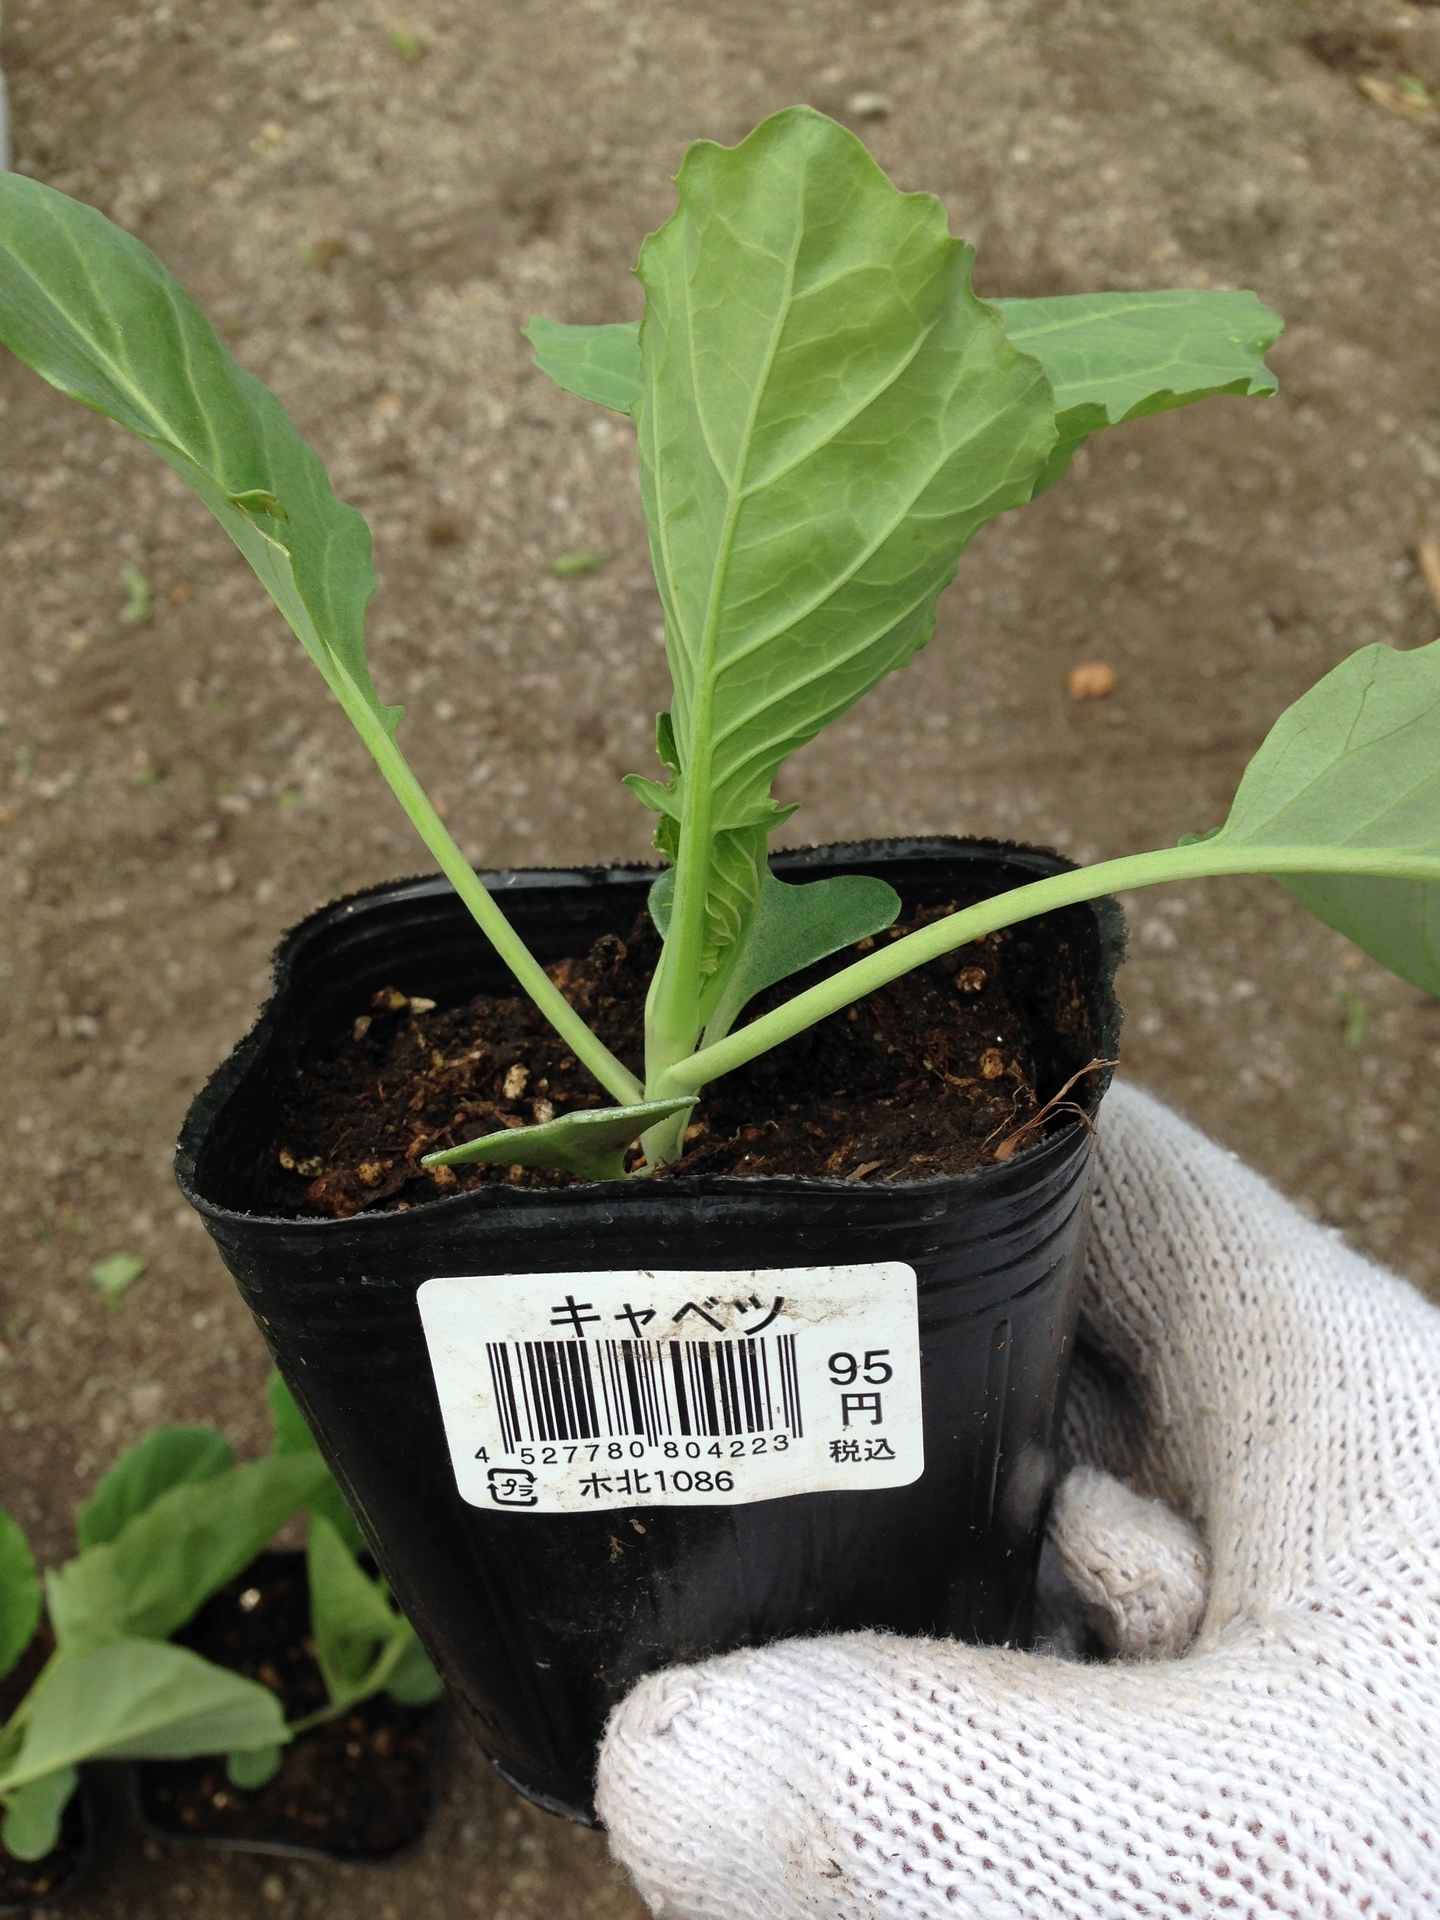 菜園 キャベツ苗植え方法とお勧め虫喰い対処法 ガジオの情報提供サイツ